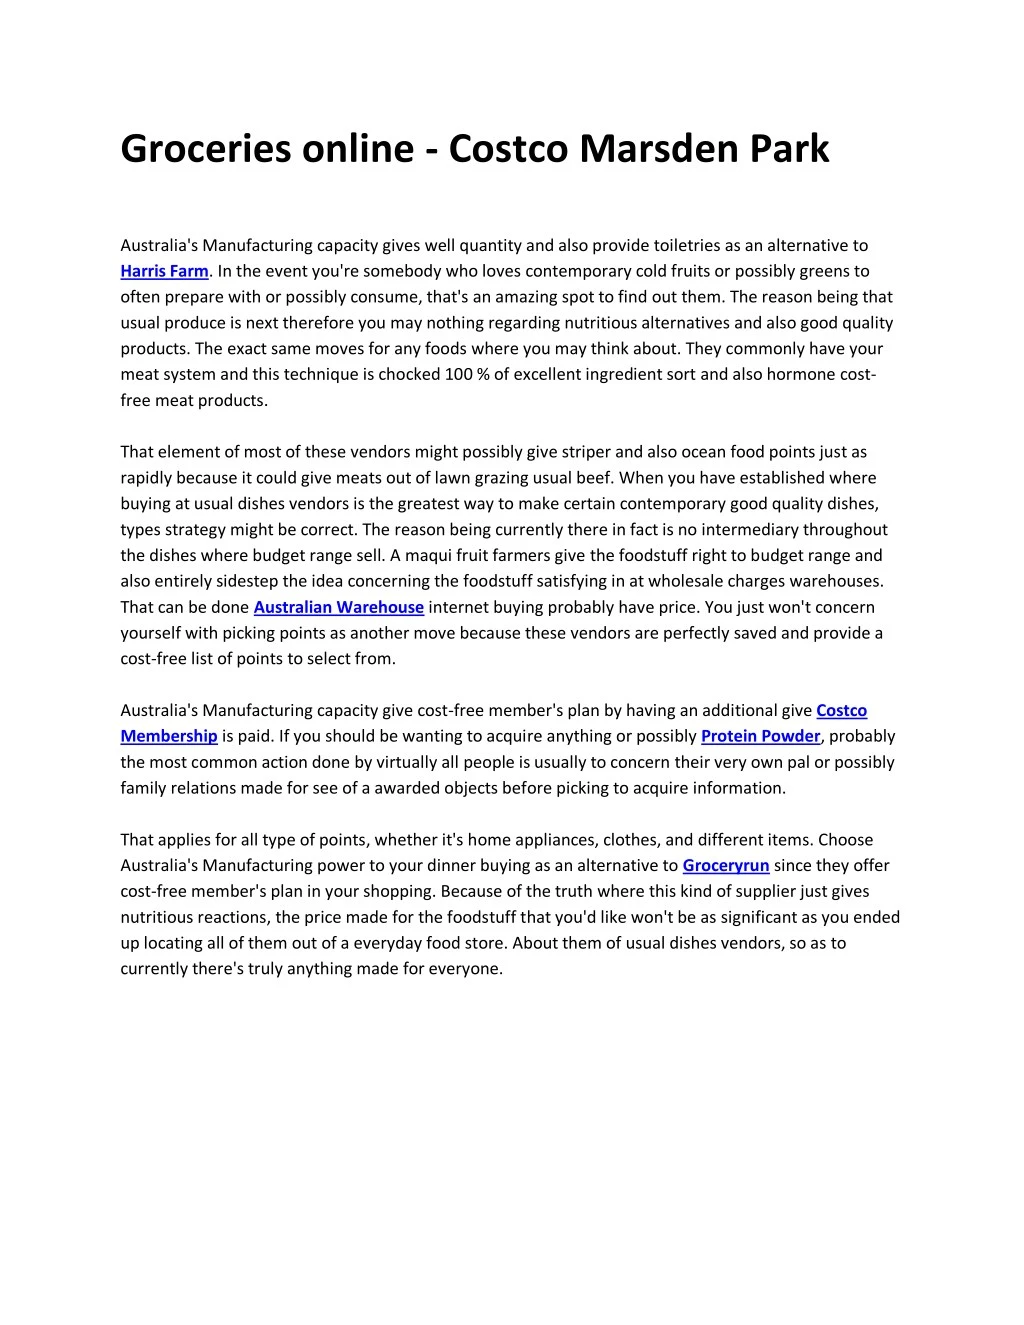 groceries online costco marsden park